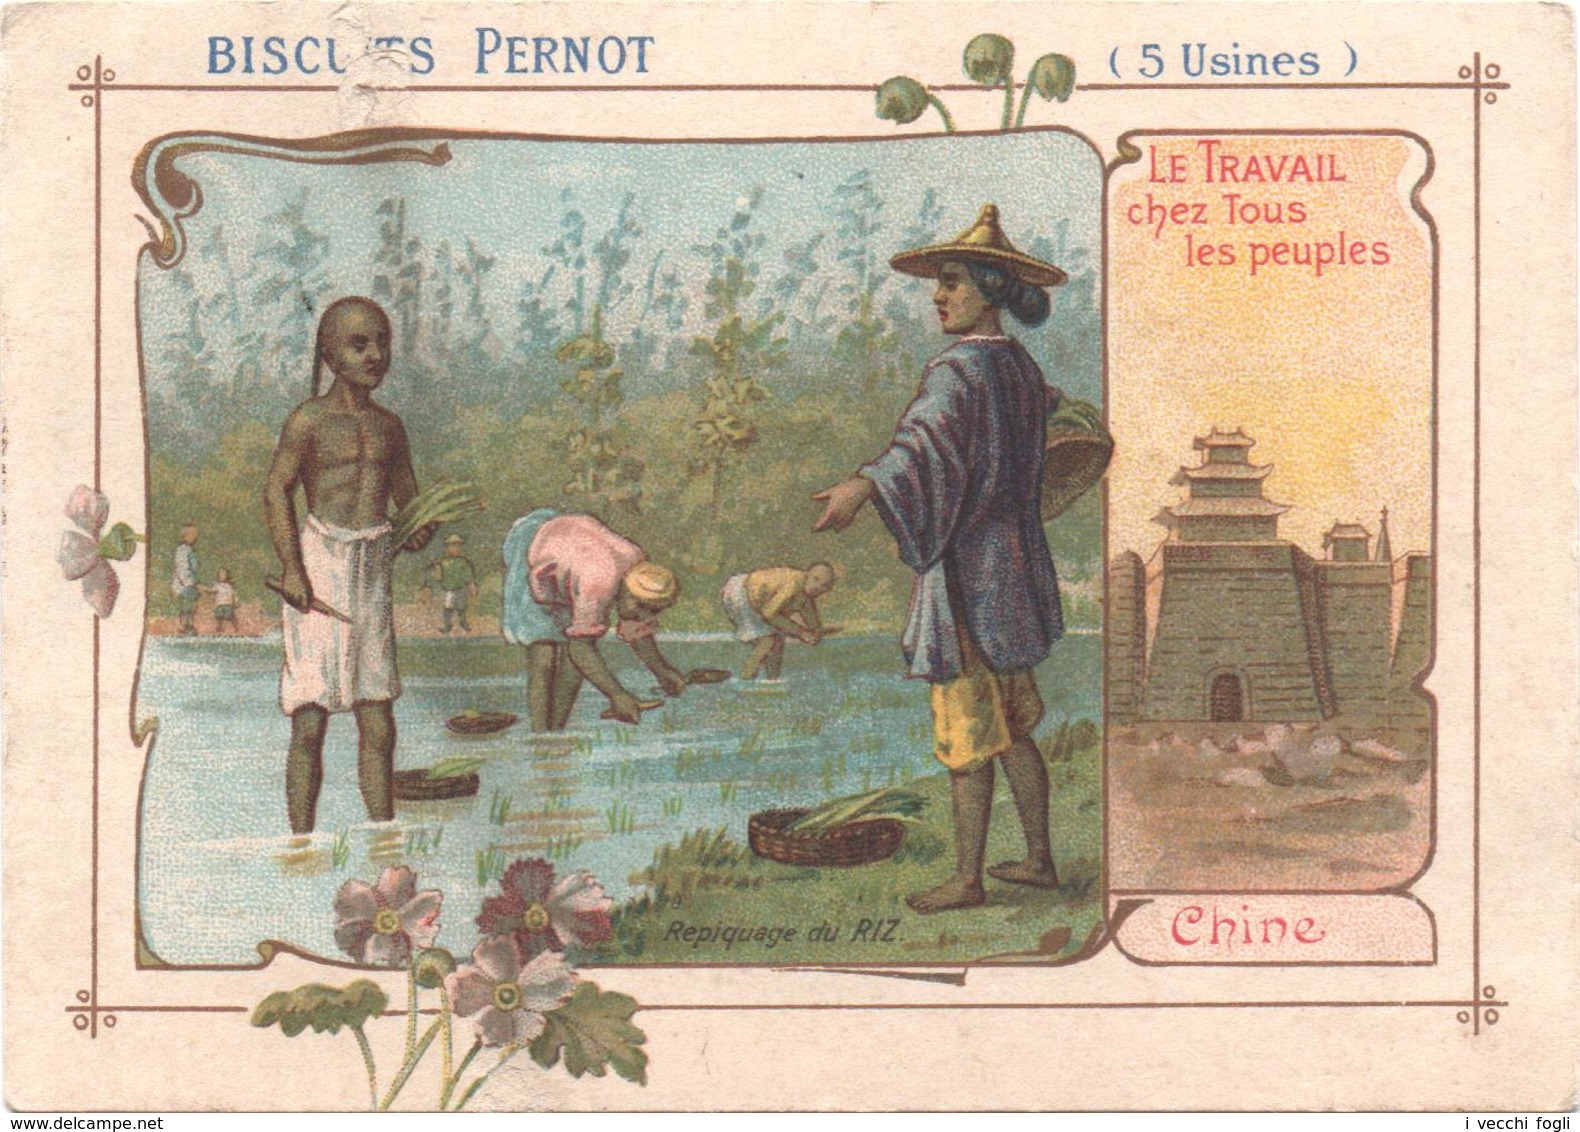 Figurina, Chromo, Victorian Trade Card. Biscuits Pernot. Chine, Repiquage Du Riz. - Pernot